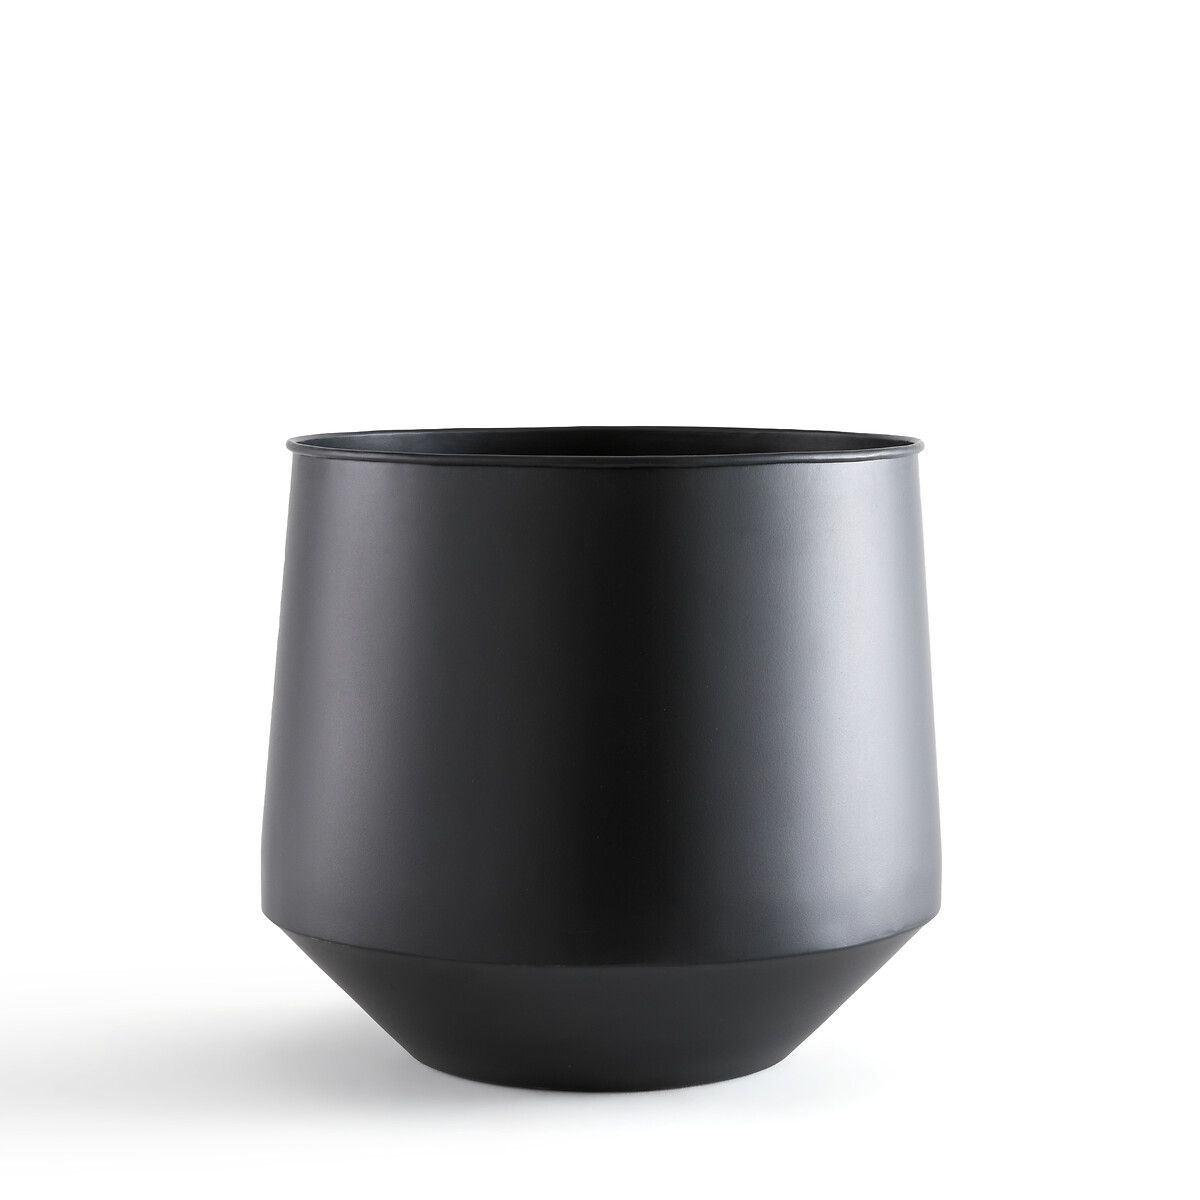 ваза из металла anaa единый размер черный Кашпо из металла 30 см Anaa единый размер черный